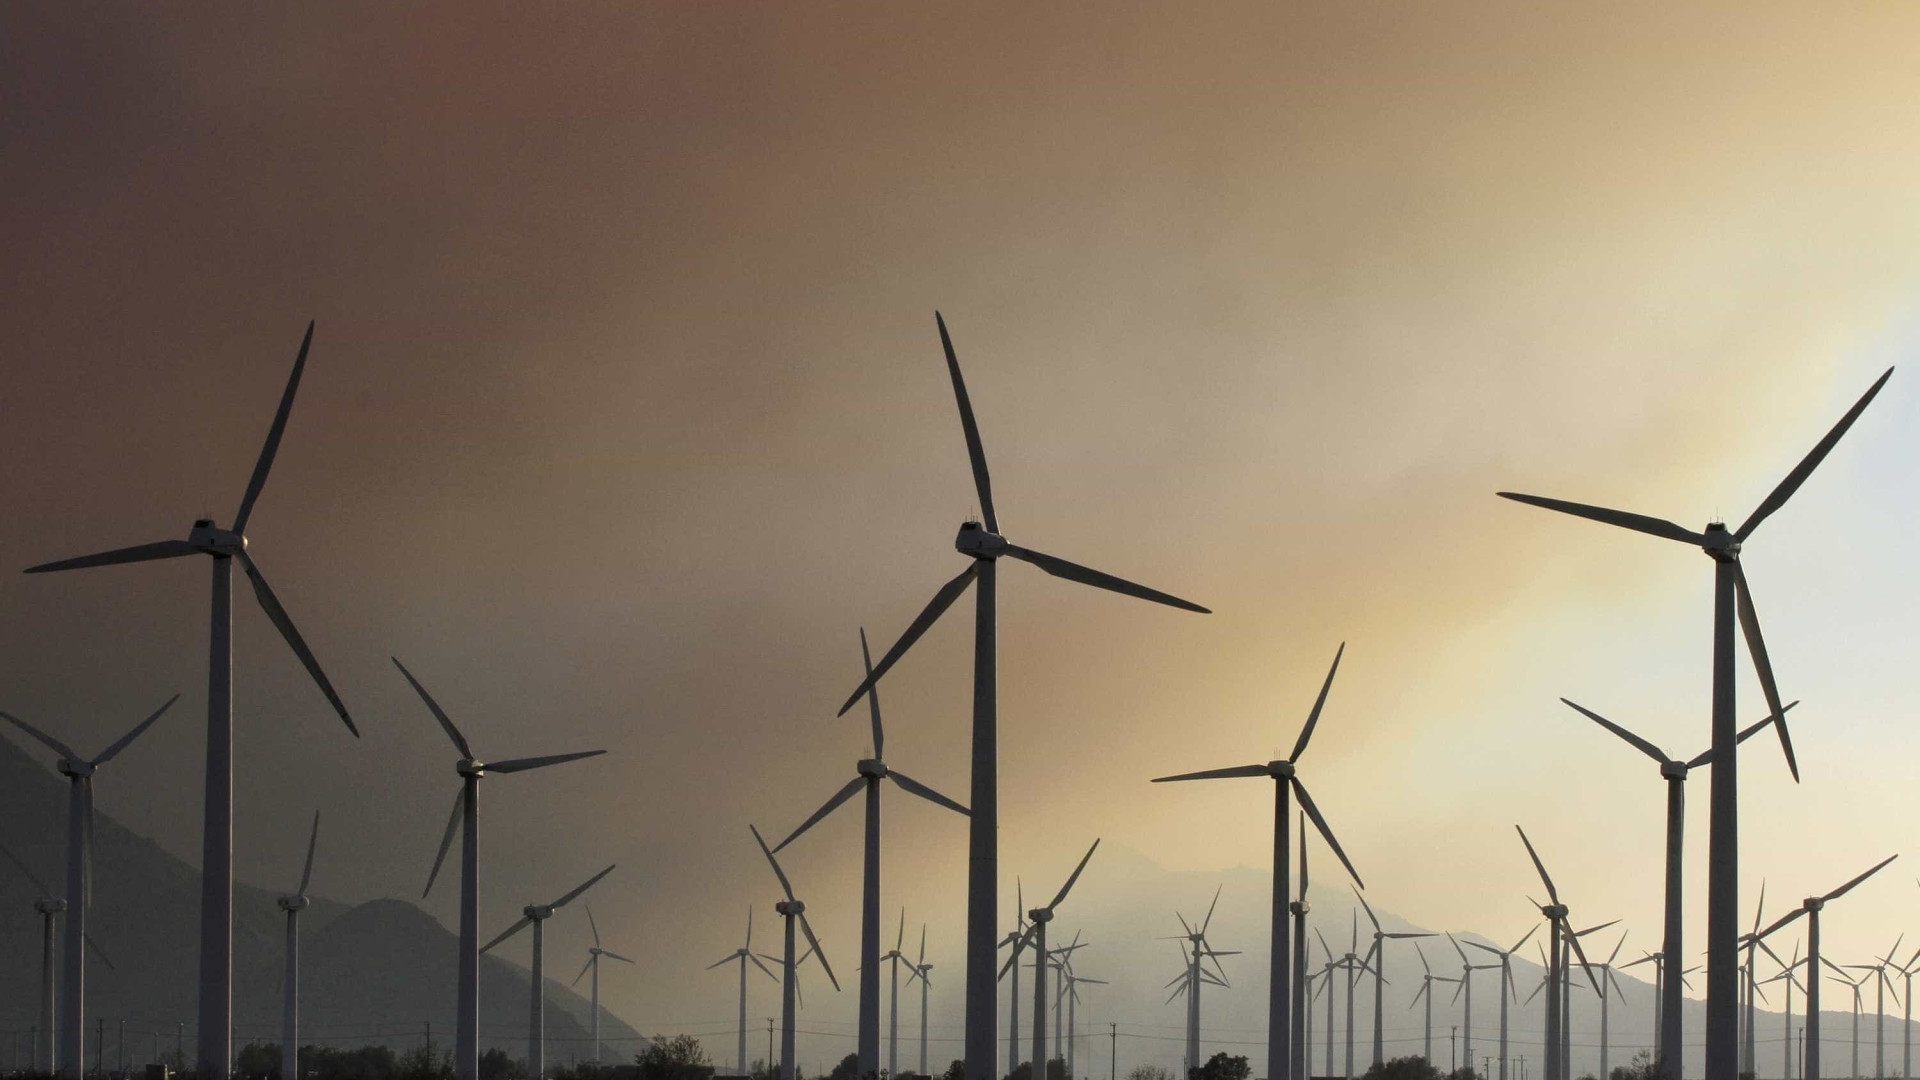 Leilão de energia eólica reúne 377 projetos em 8 Estados